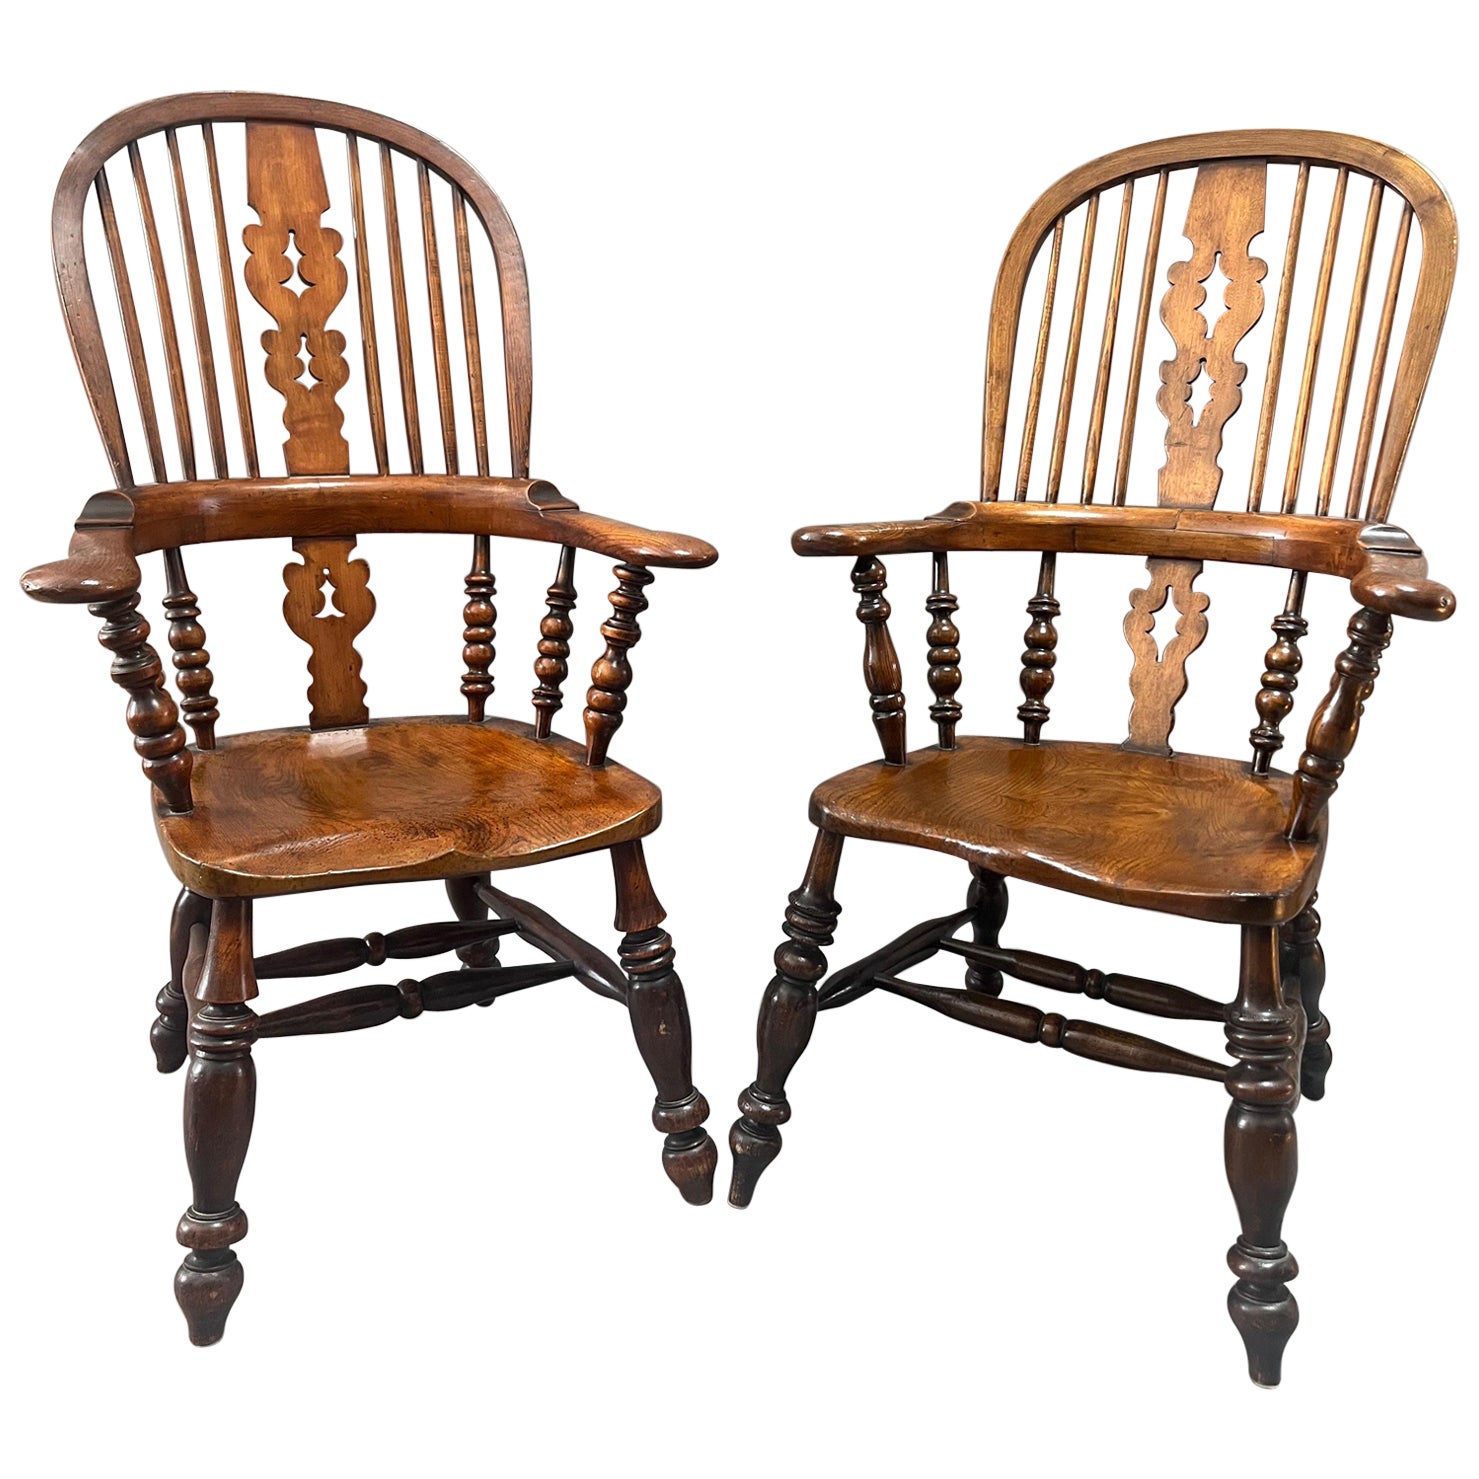 Paire similaire de fauteuils Windsor anglais à dossier à nœud de style George III. 